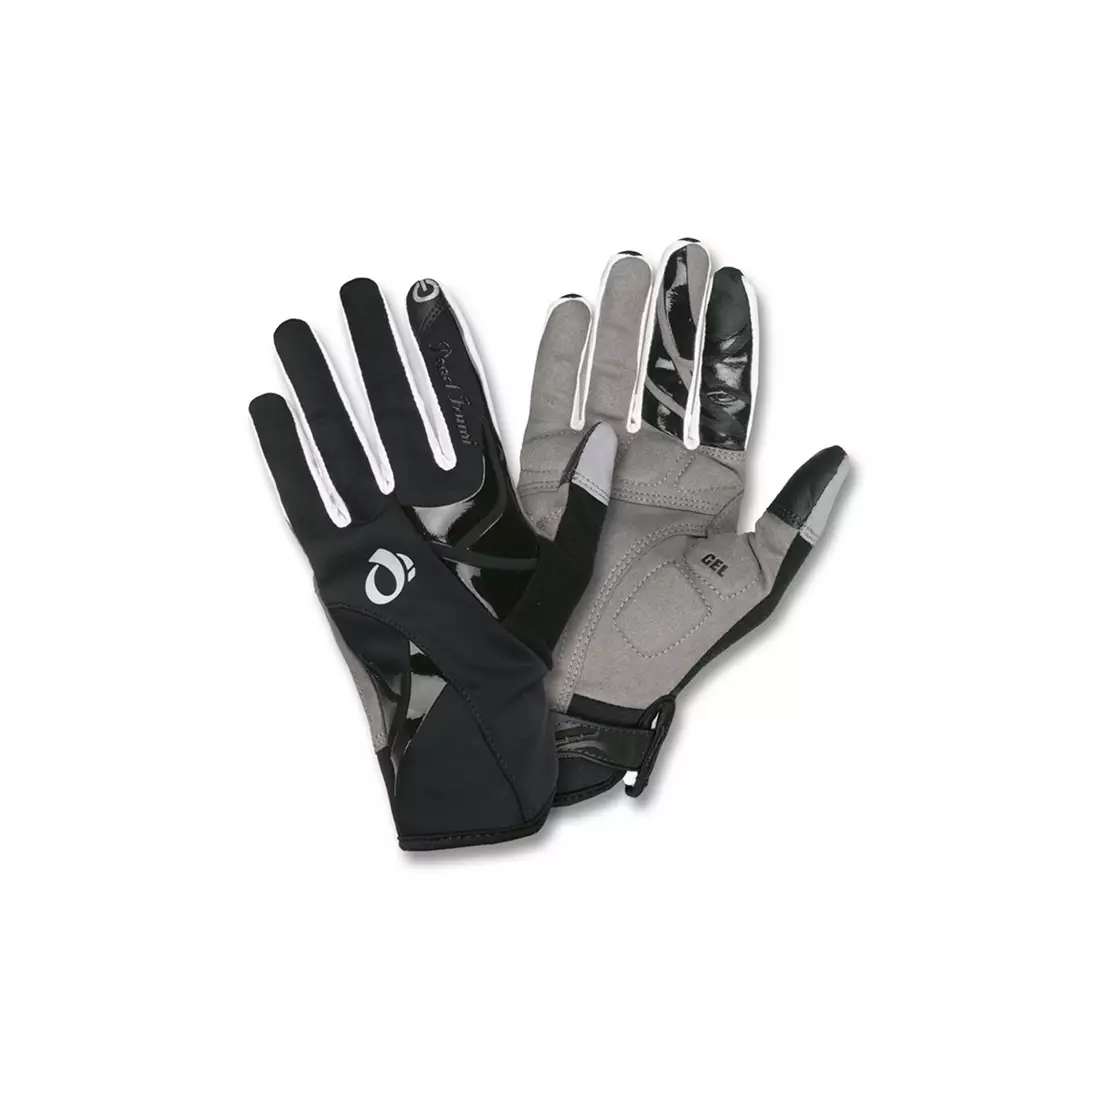 PEARL IZUMI W's ELITE Cyclone Gel Glove 14241404-021 - dámske cyklistické rukavice